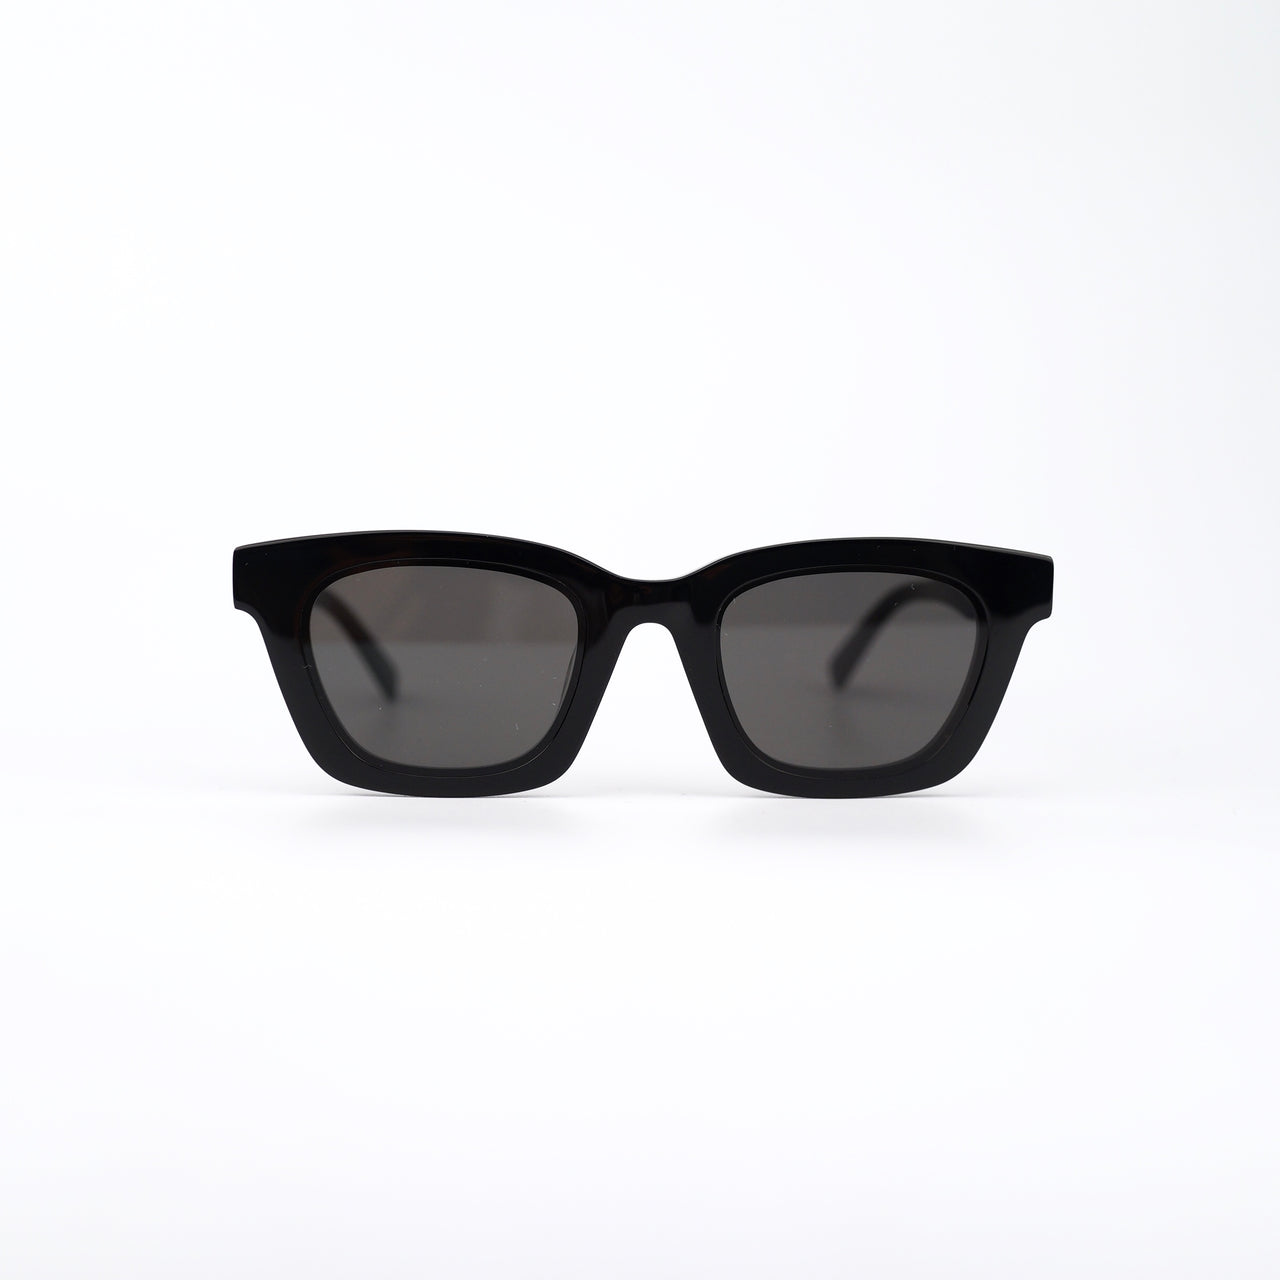 Black Acetate Sunglasses with Dark Gray Lenses